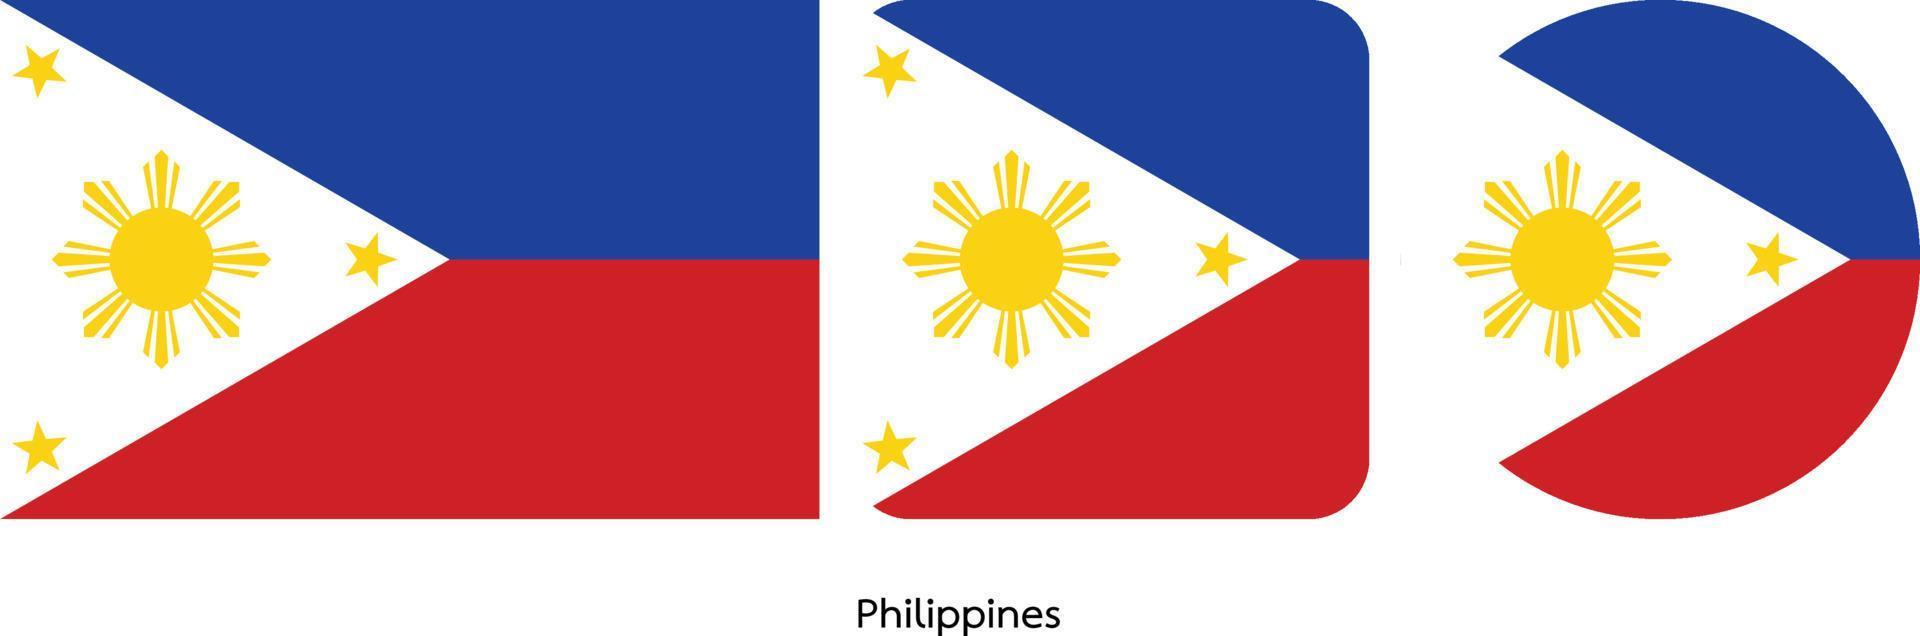 bandera de filipinas, ilustración vectorial vector